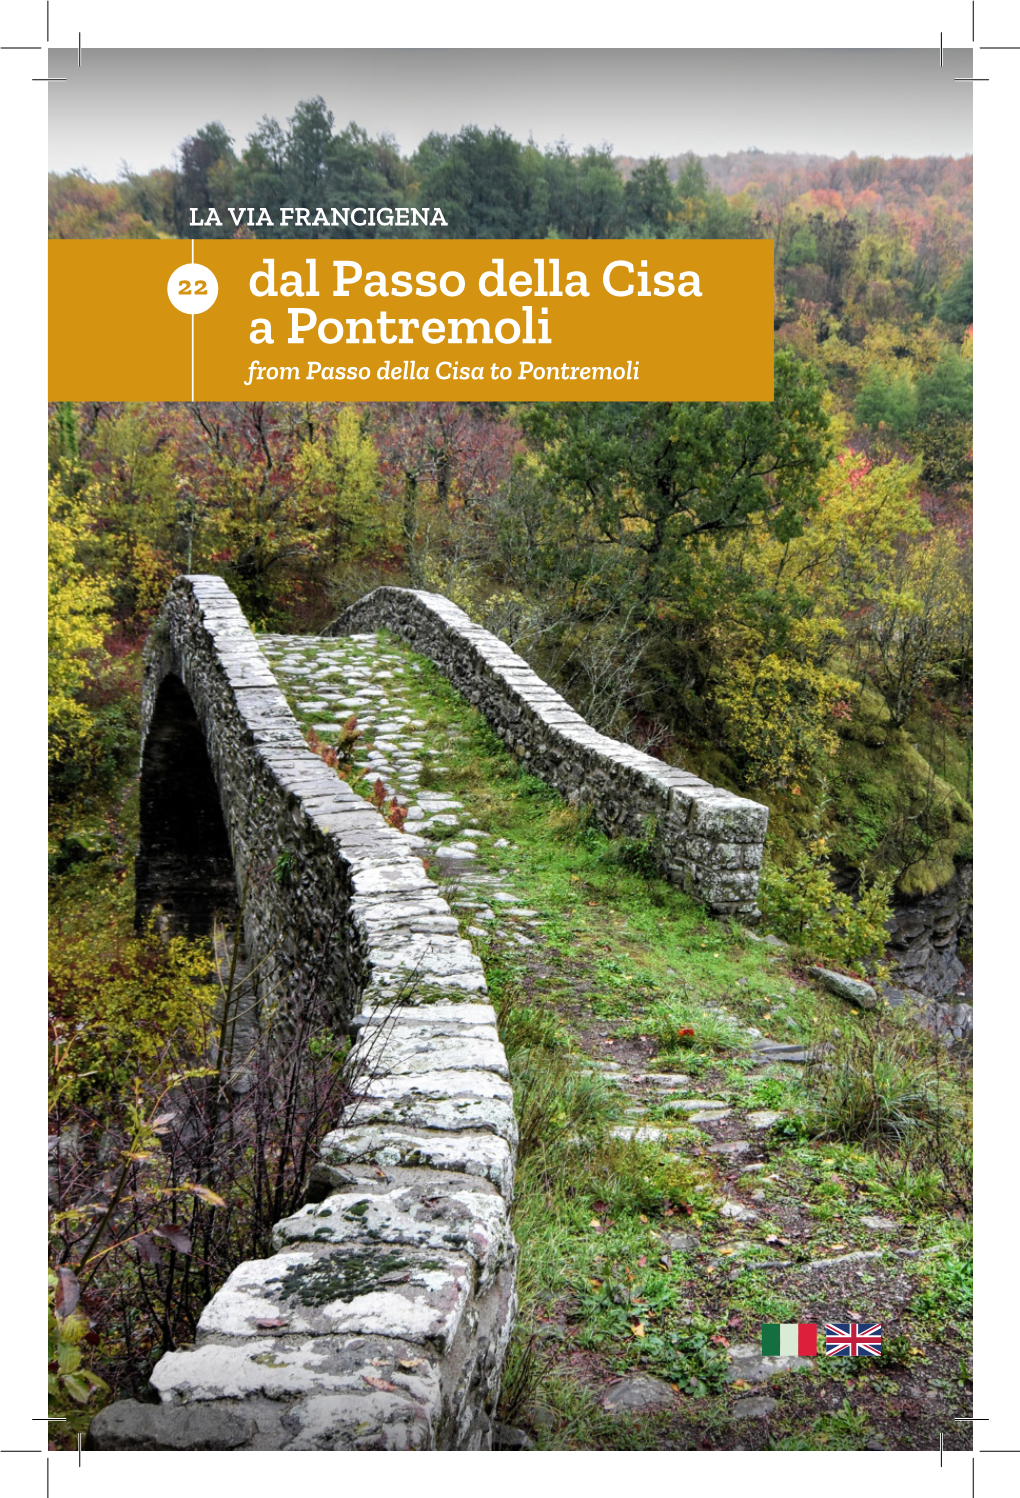 Dal Passo Della Cisa a Pontremoli from Passo Della Cisa to Pontremoli Crediti Fotografici: Maxresdefault (Pag